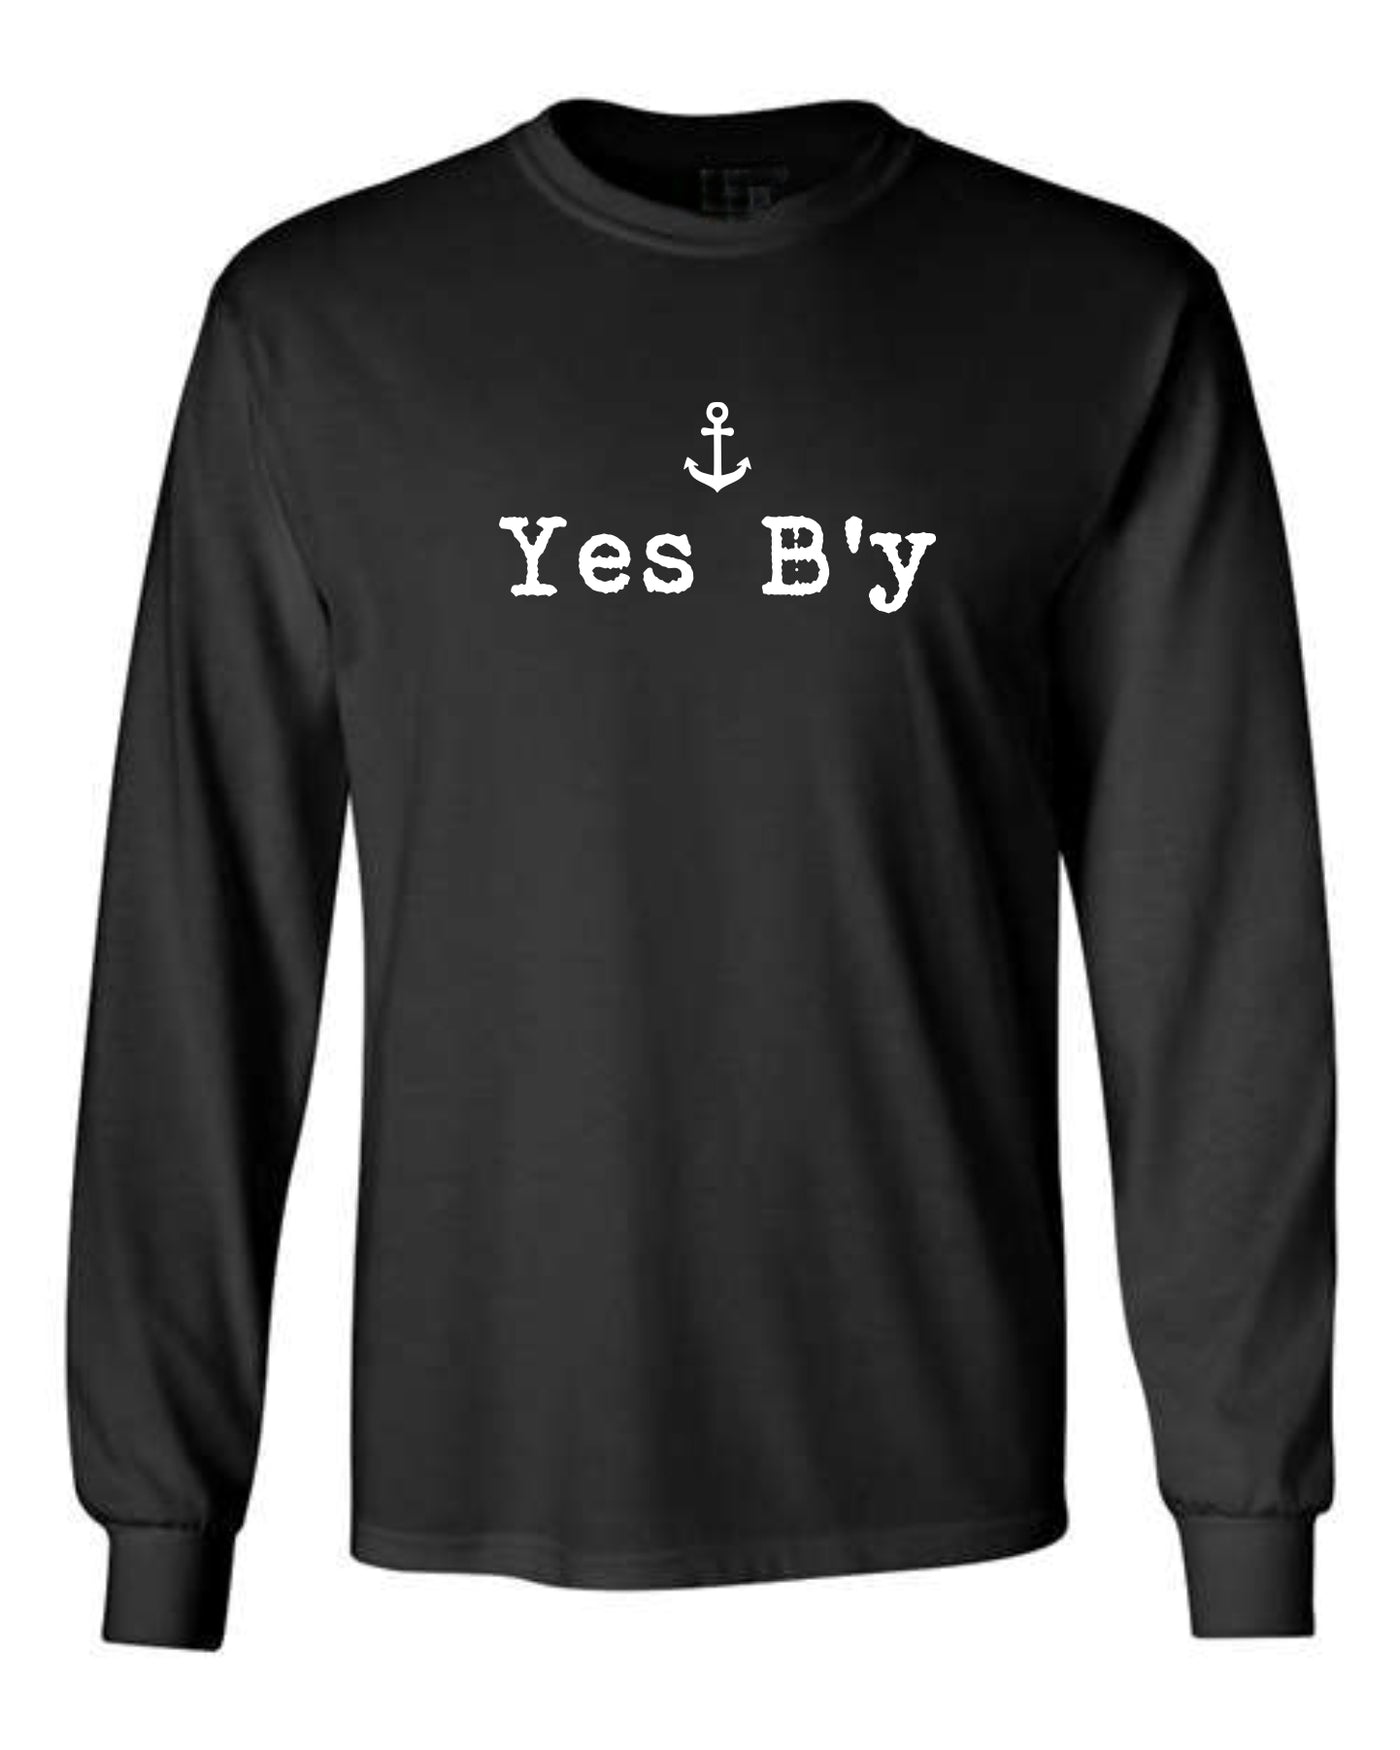 "Yes B'y" Unisex Long Sleeve Shirt